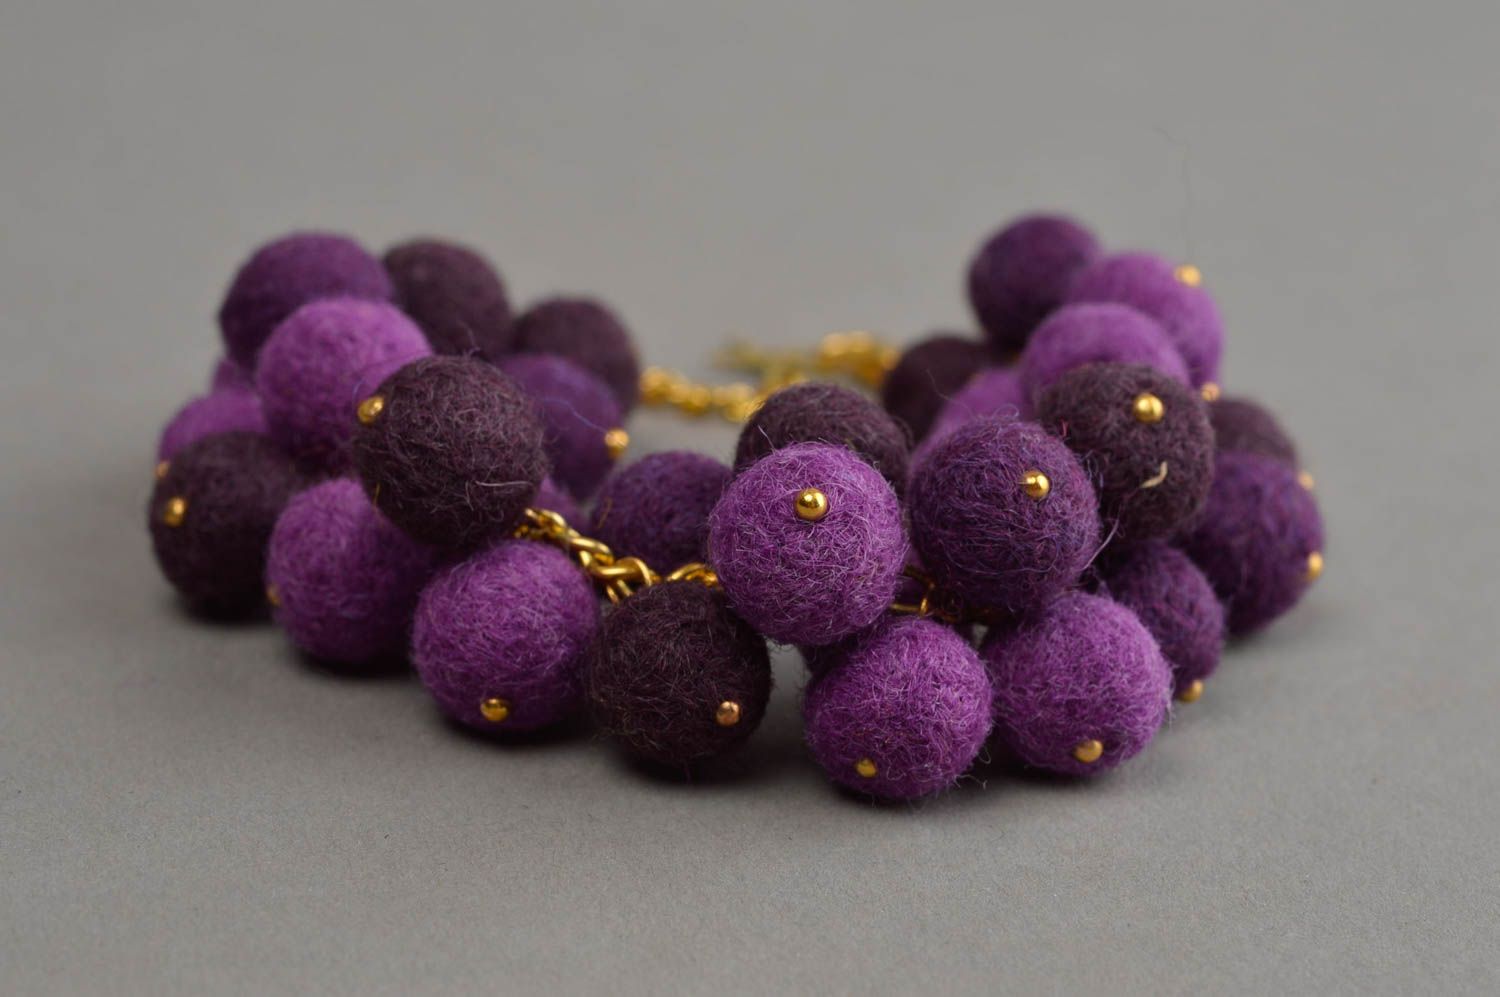 Браслет из шерстяных шариков фиолетовый на цепочке под золото аксессуар хендмейд фото 4